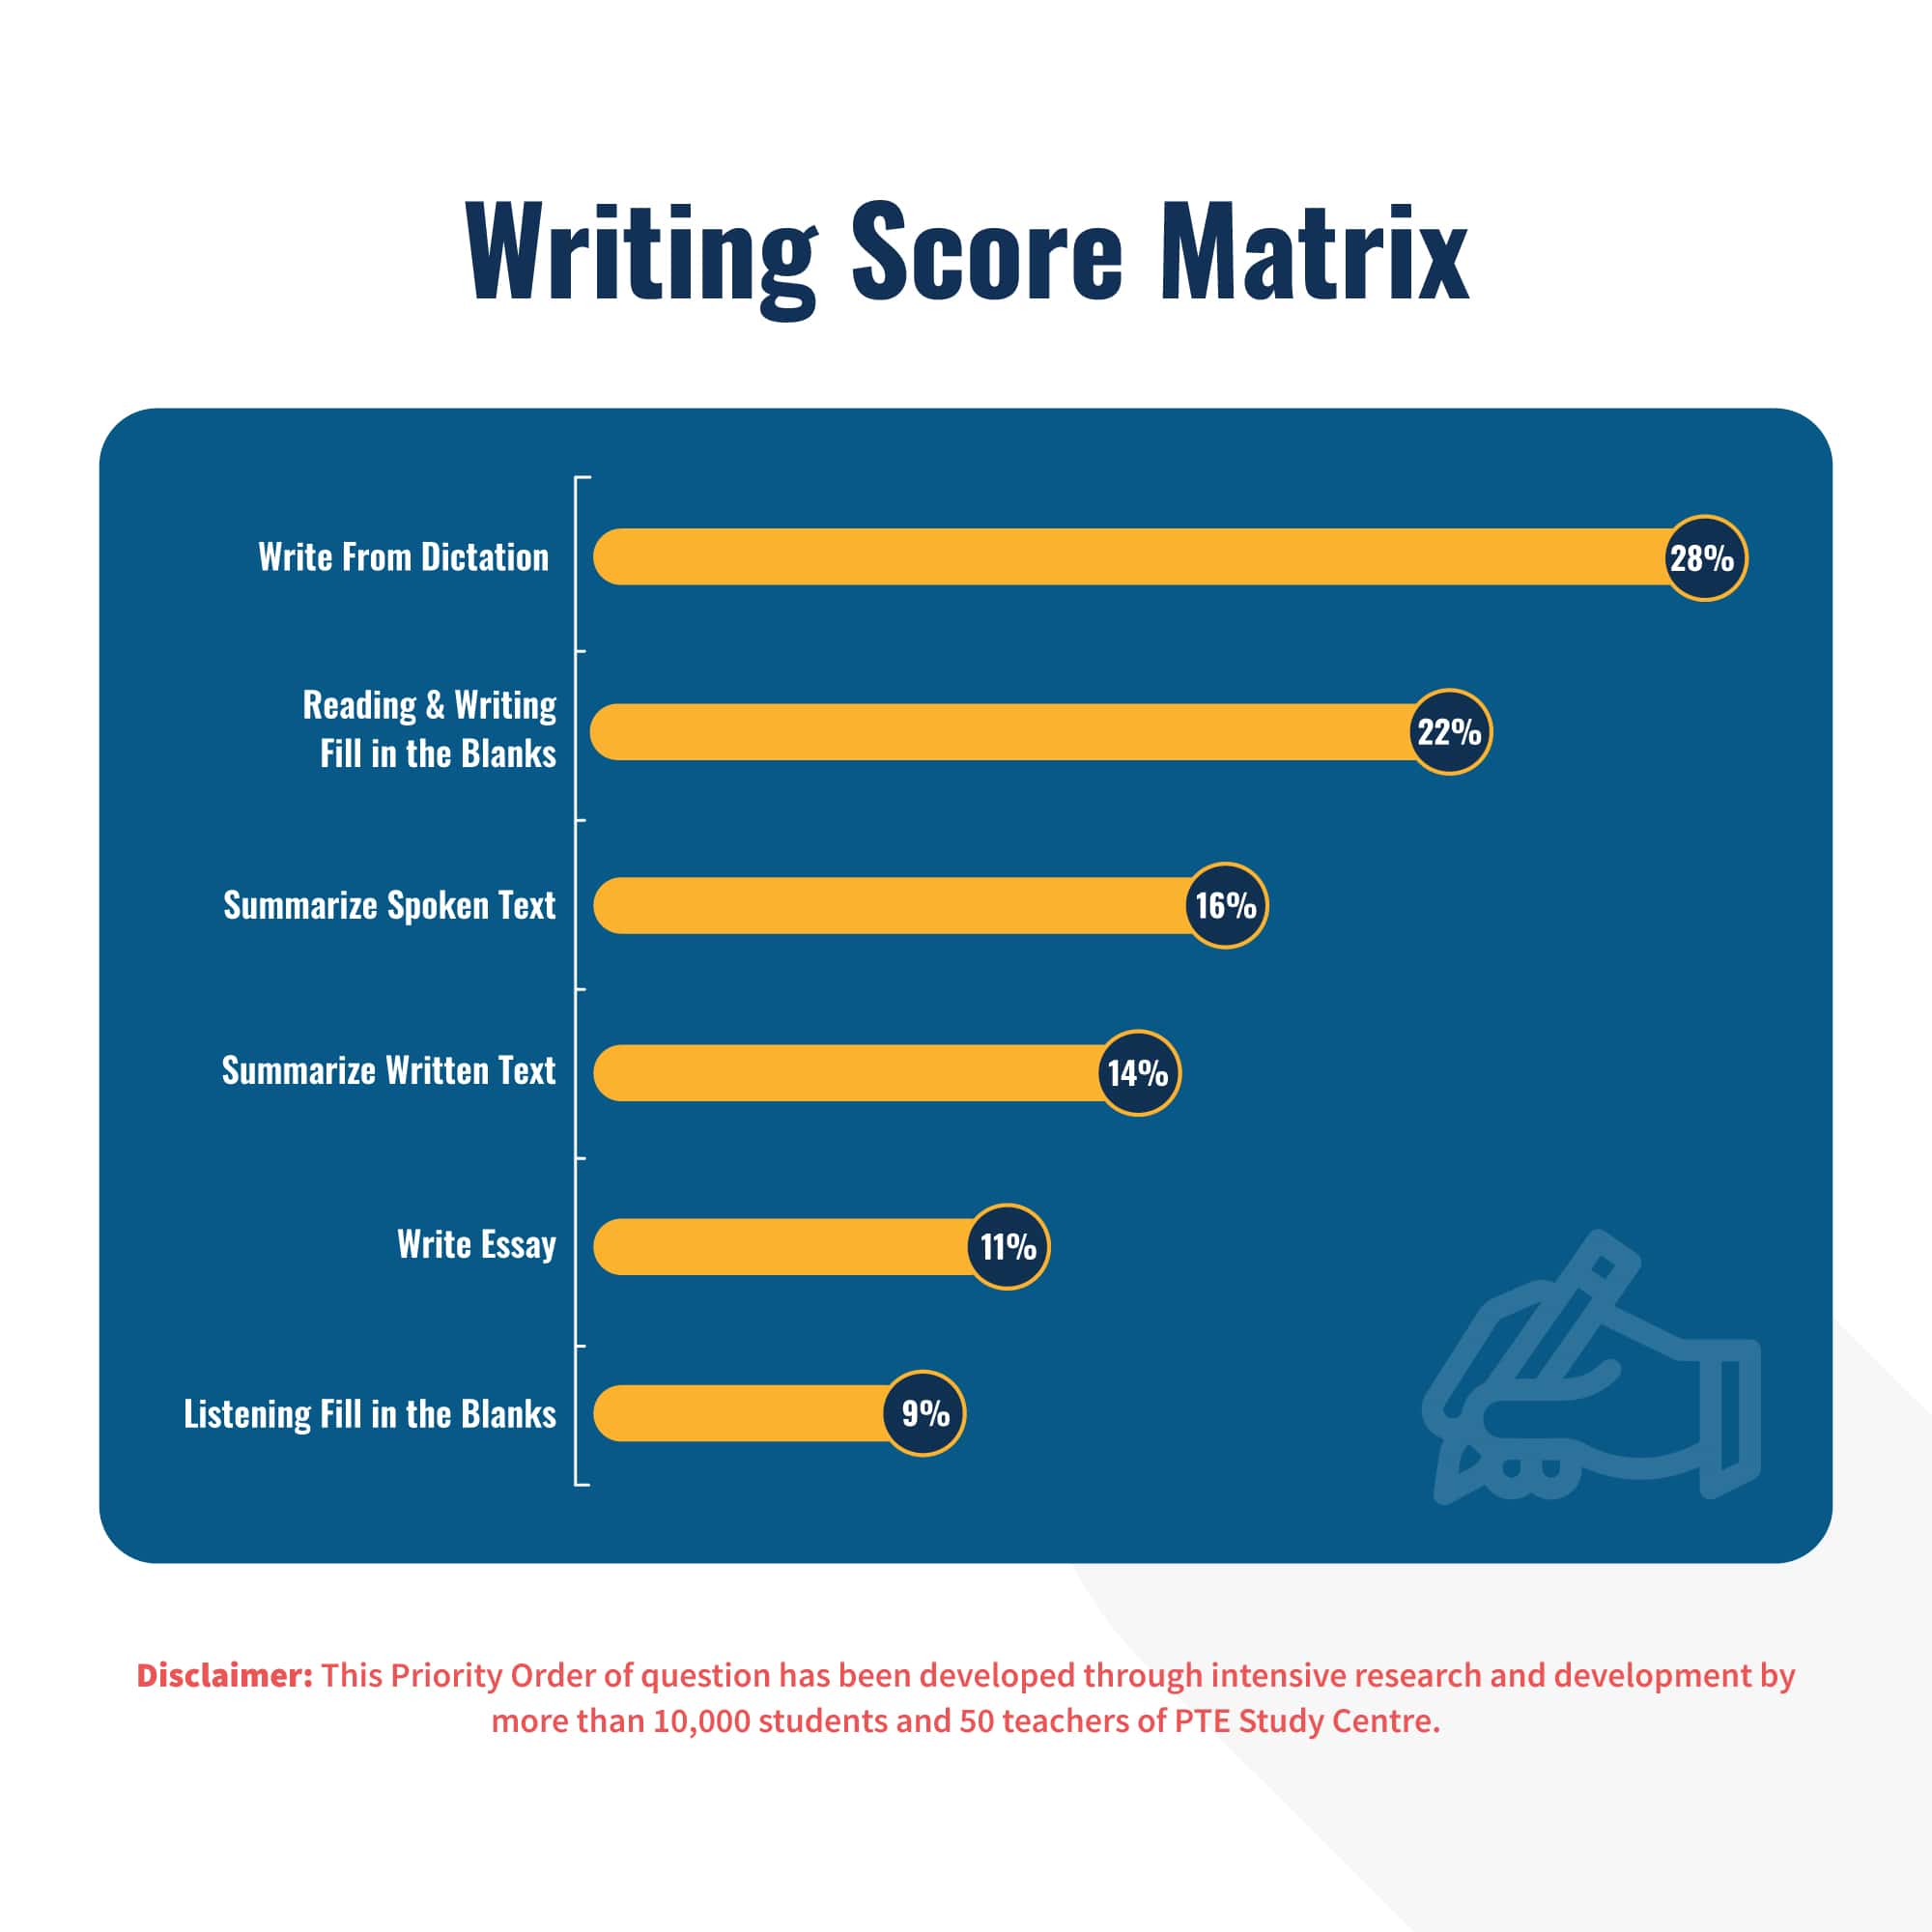 Writing Score Matrix